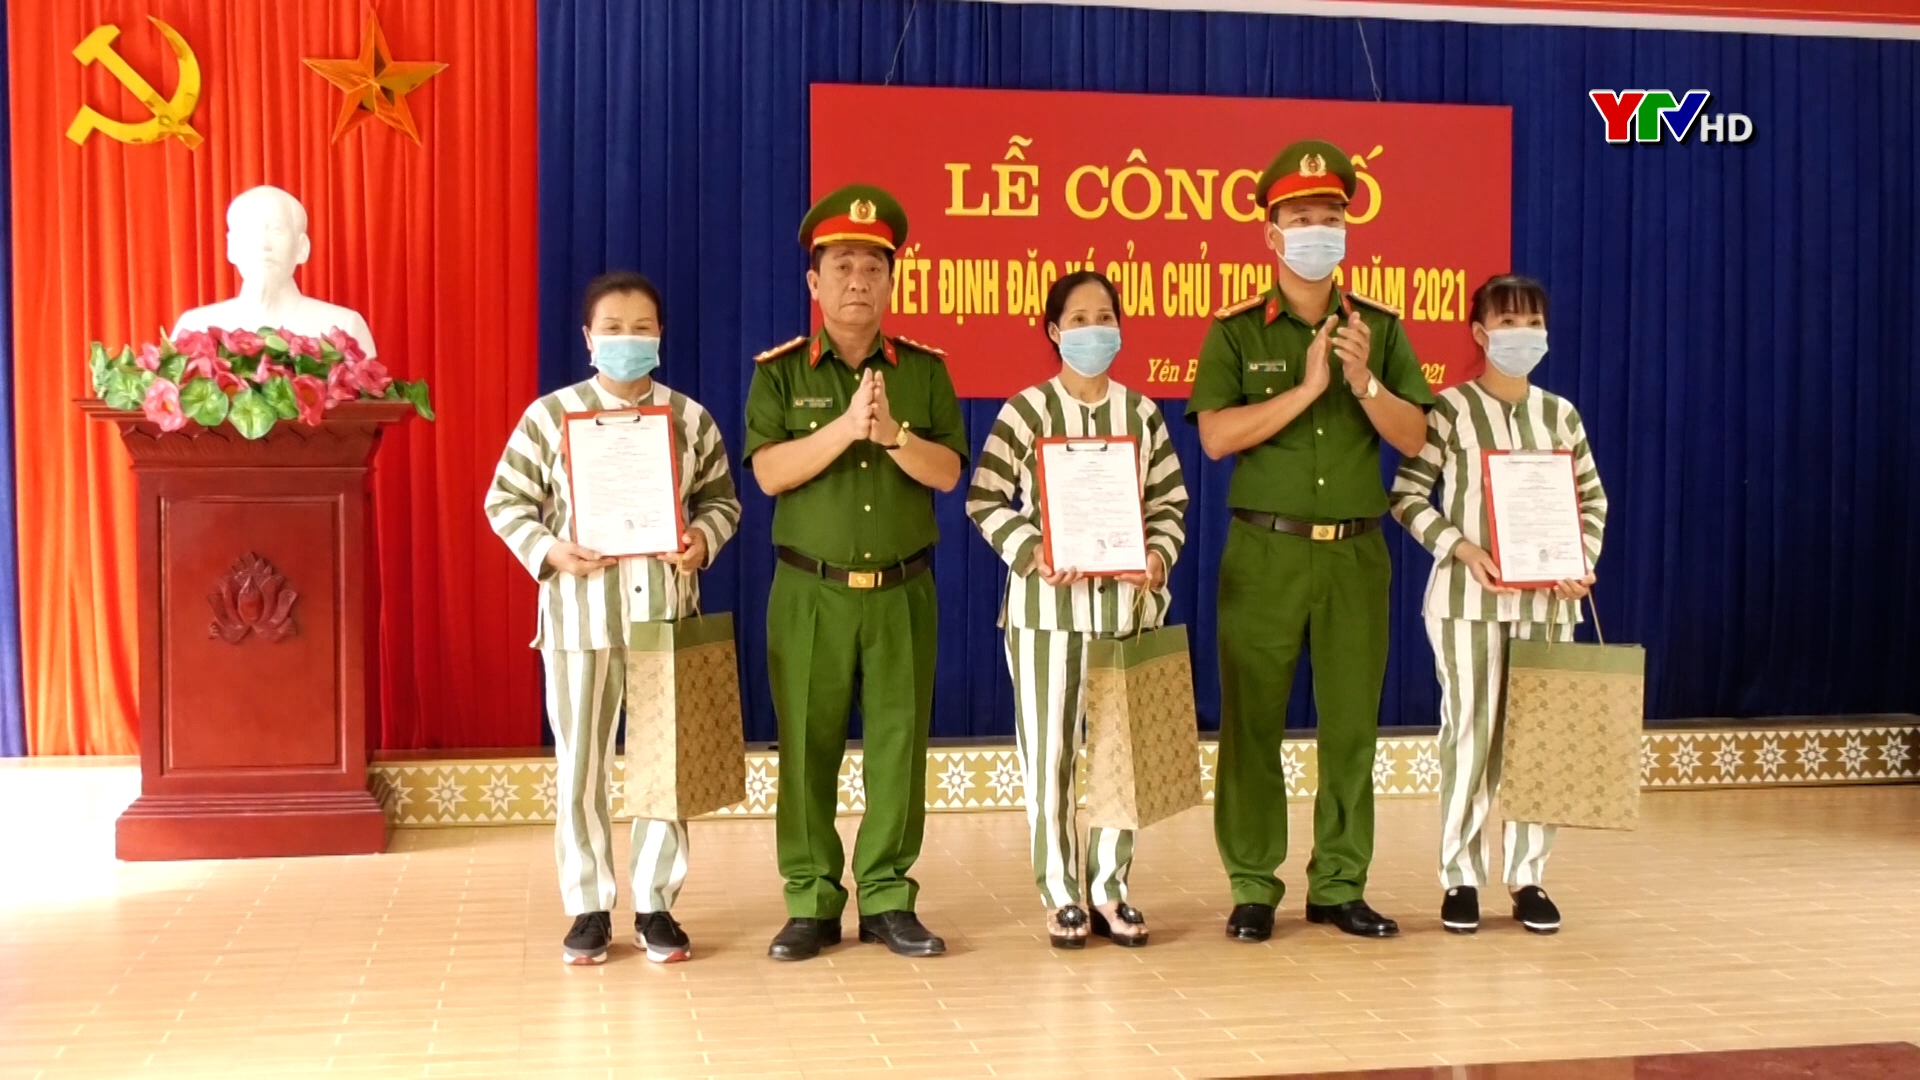 3 phạm nhân tại Trại tạm giam Công an tỉnh Yên Bái được đặc xá